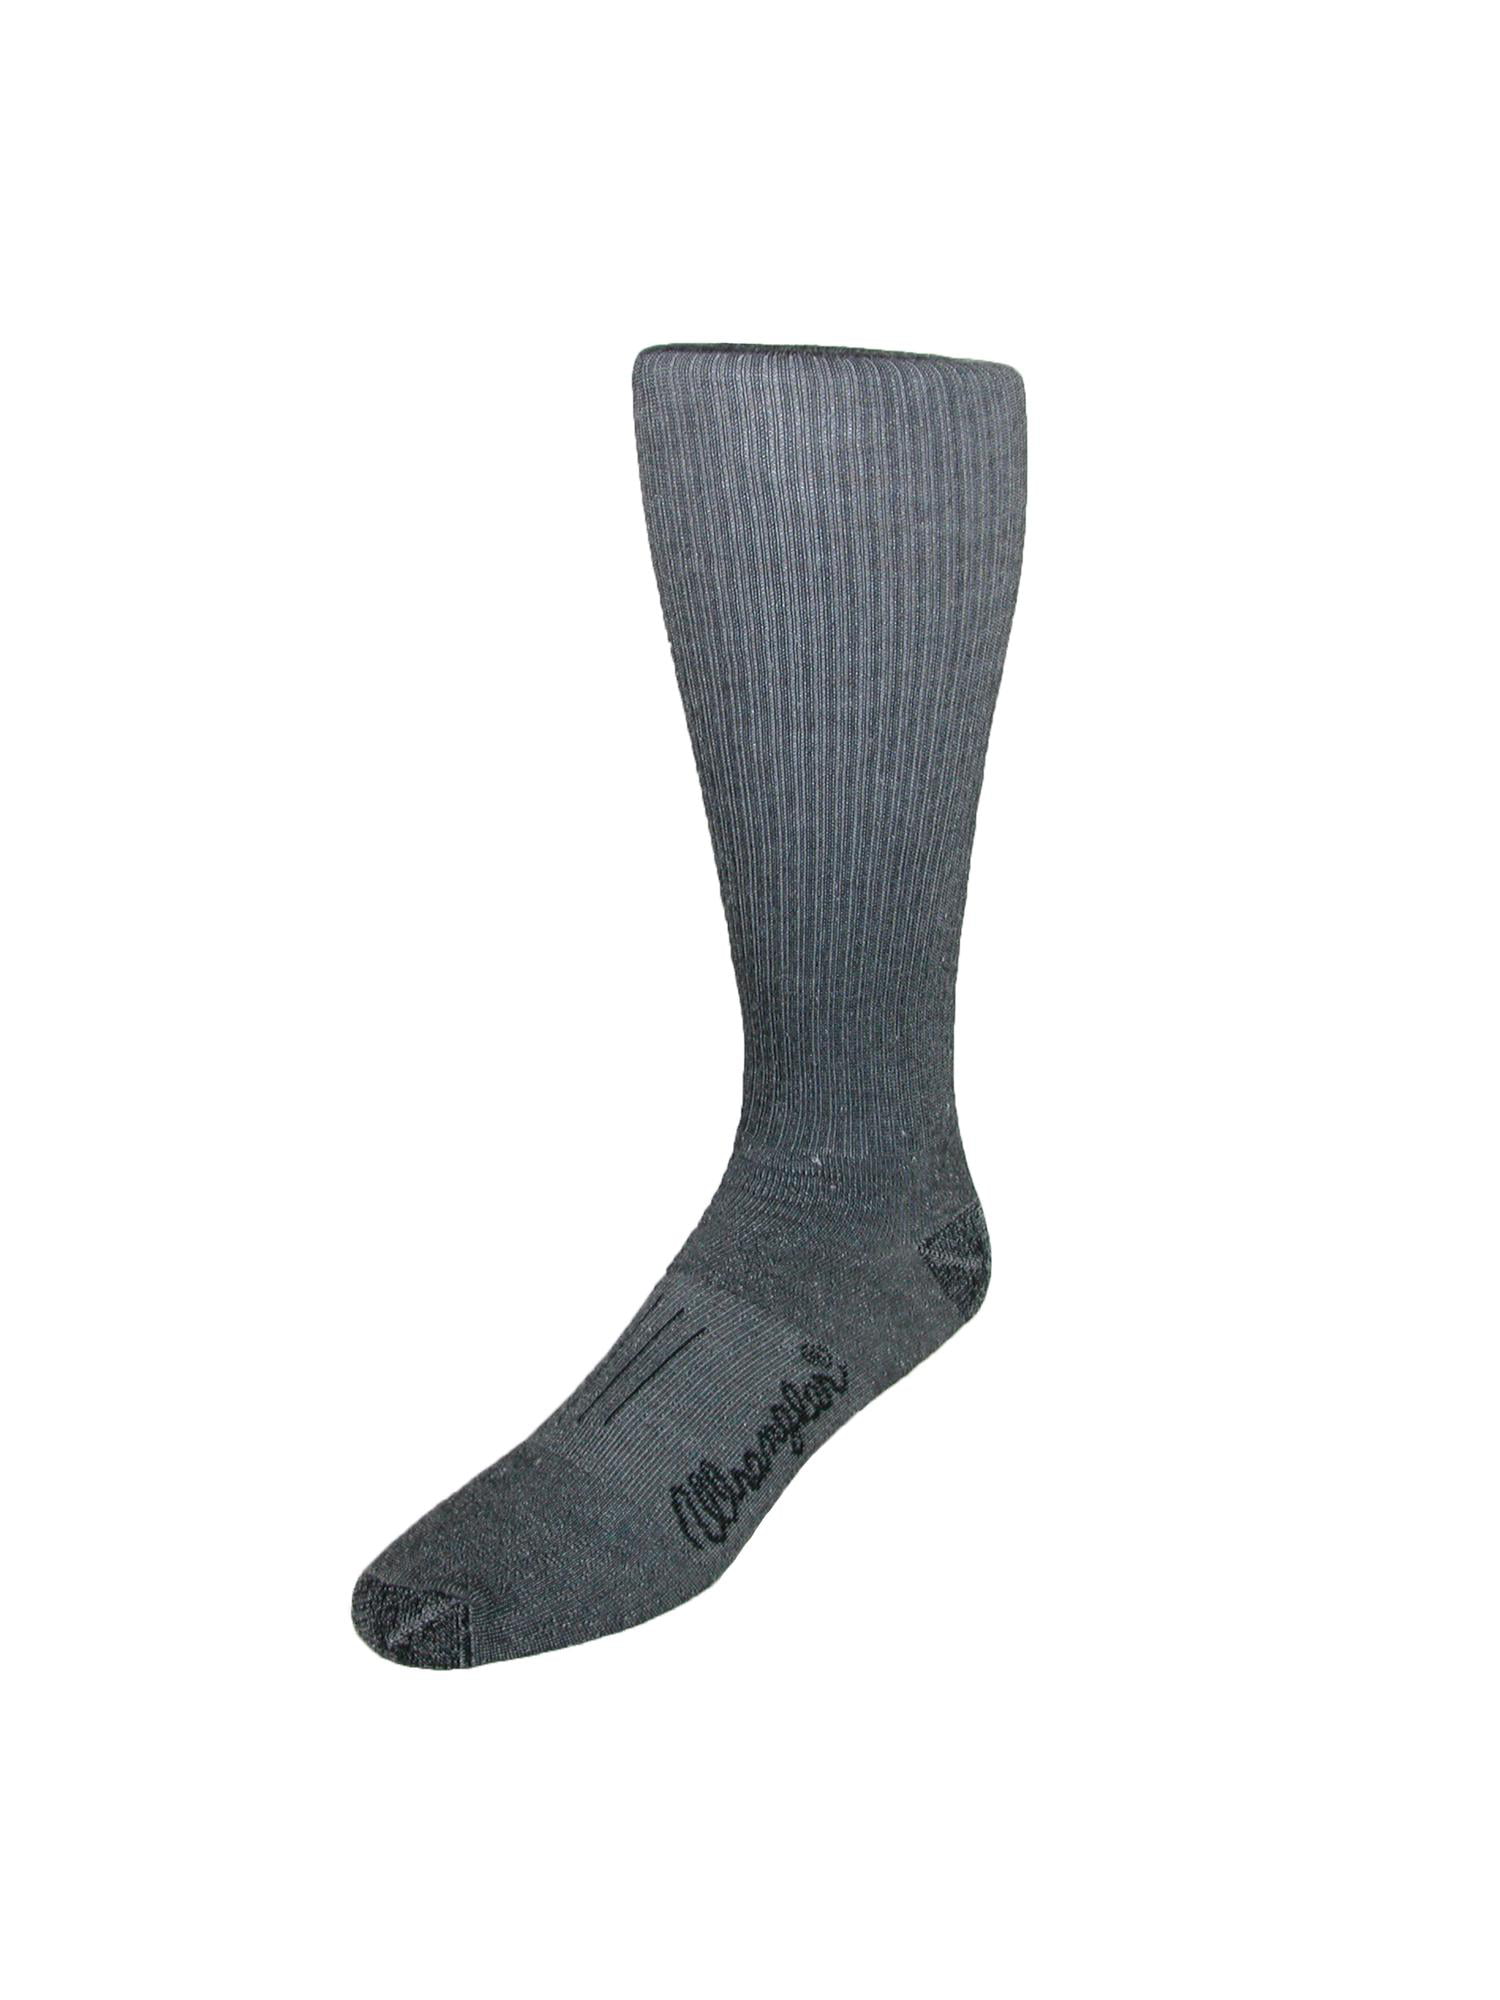 New Wrangler Men's Dry Wick Western Mid Calf Boot Sock Pack of 3 